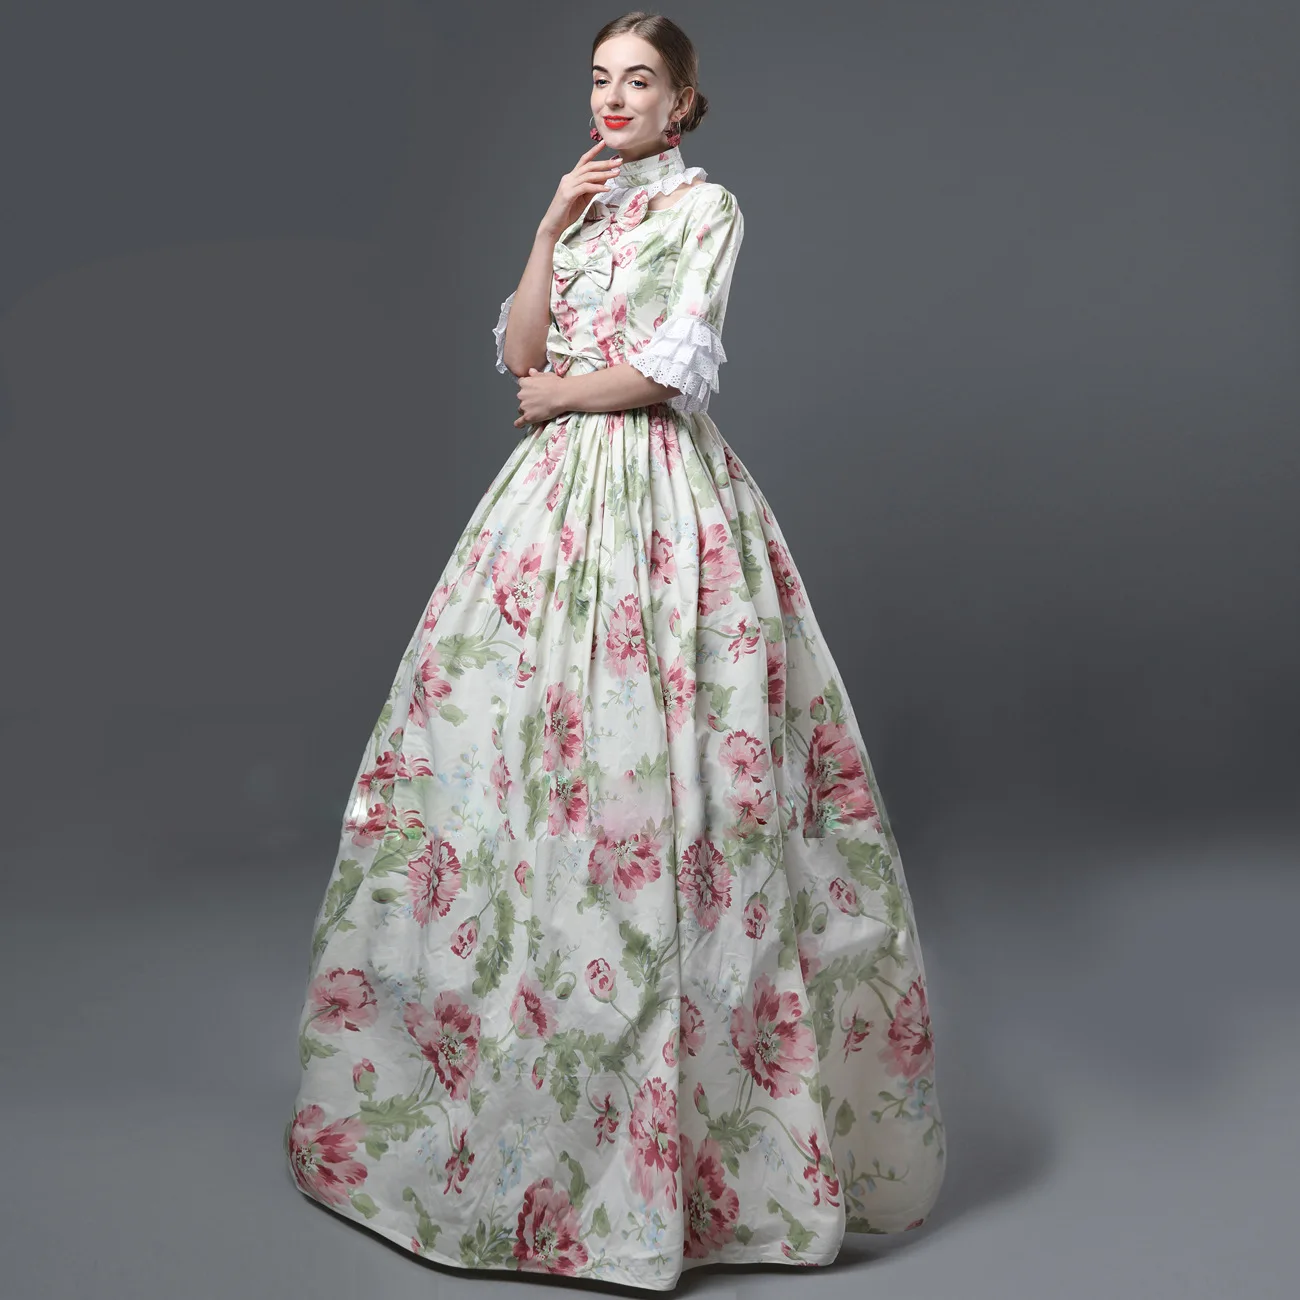 

Бальное платье Rococo барокко Мария-Антуанетта, бальное платье 18-го века, эпохи Возрождения, исторический период, платье для женщин, вечернее п...